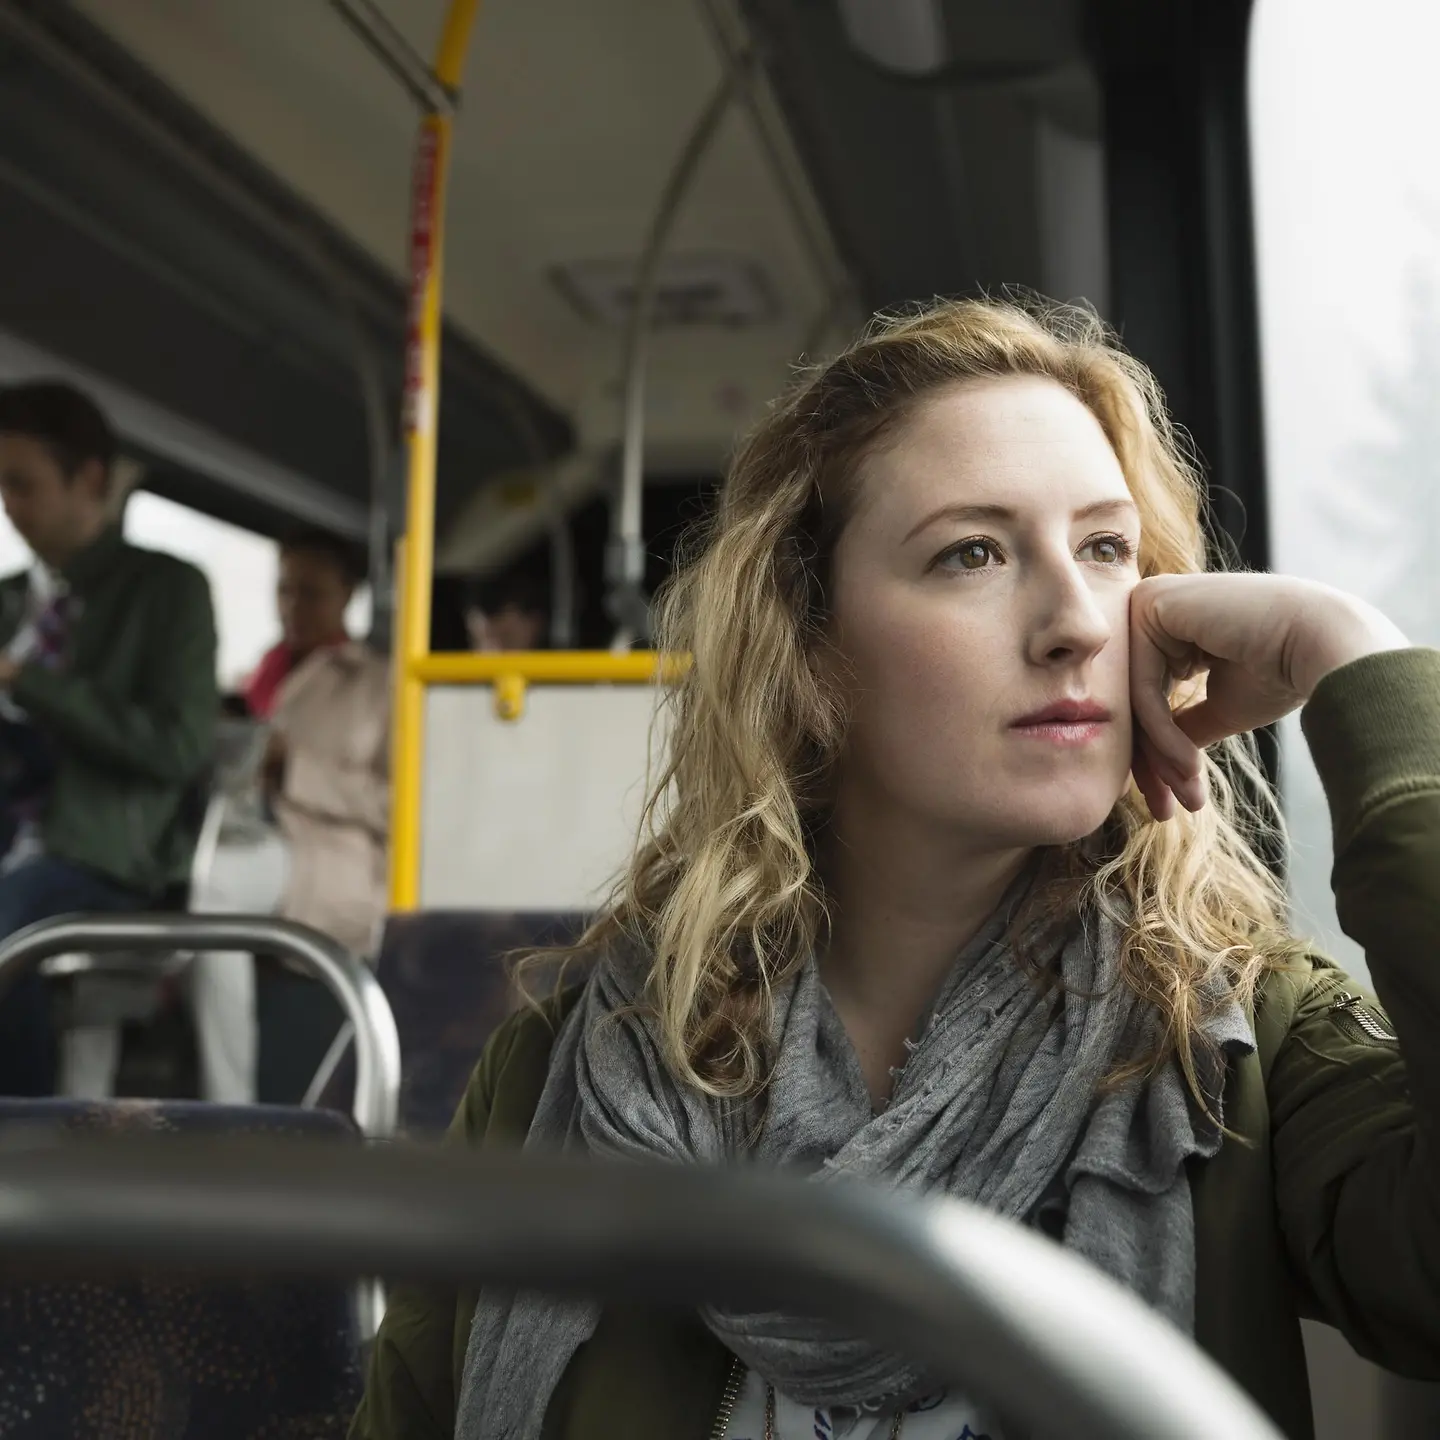 Eine junge Frau im Bus schaut besorgt aus dem Fenster